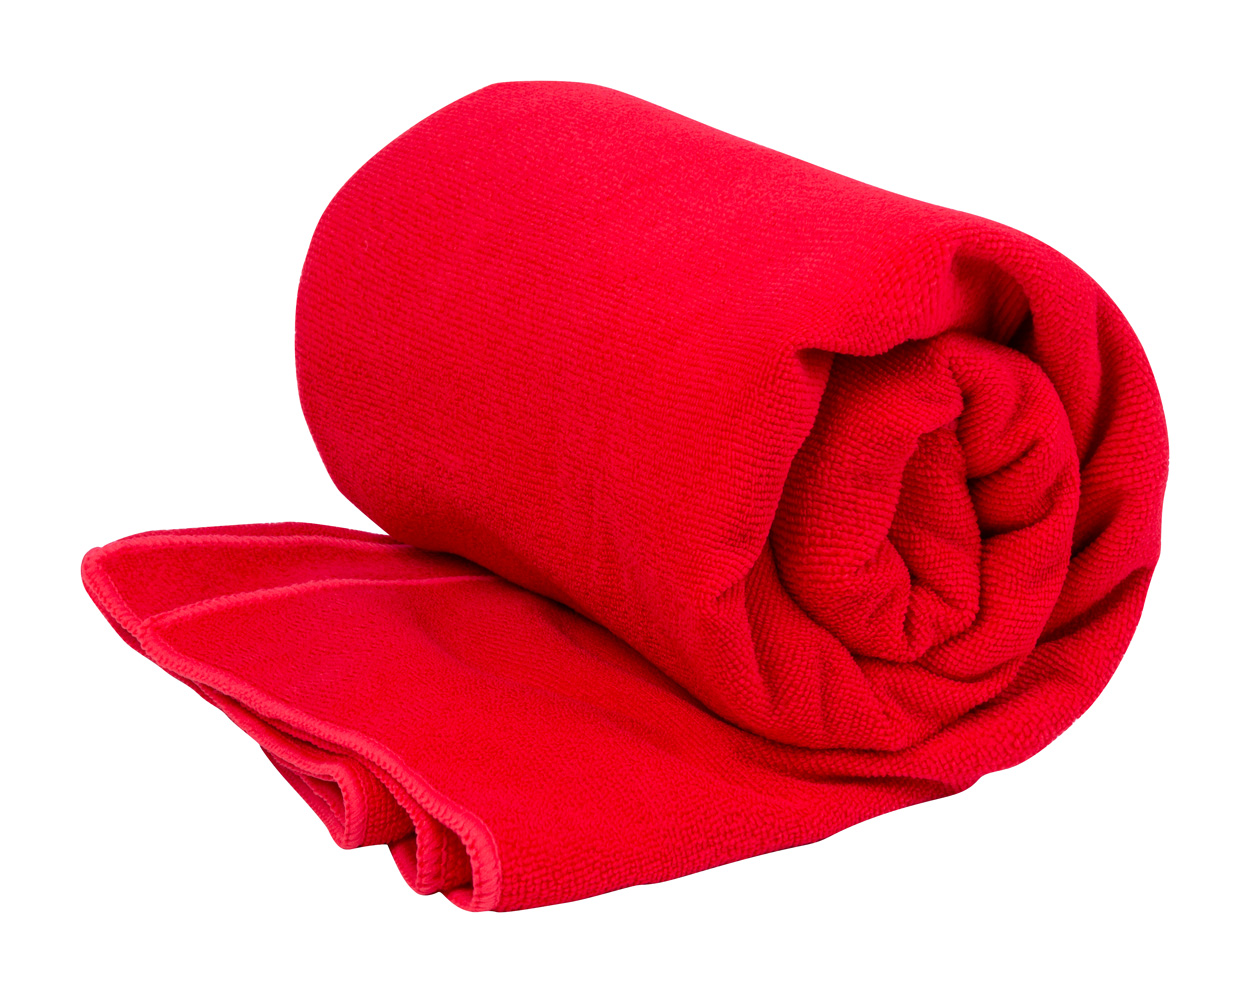 Risel RPET towel - red